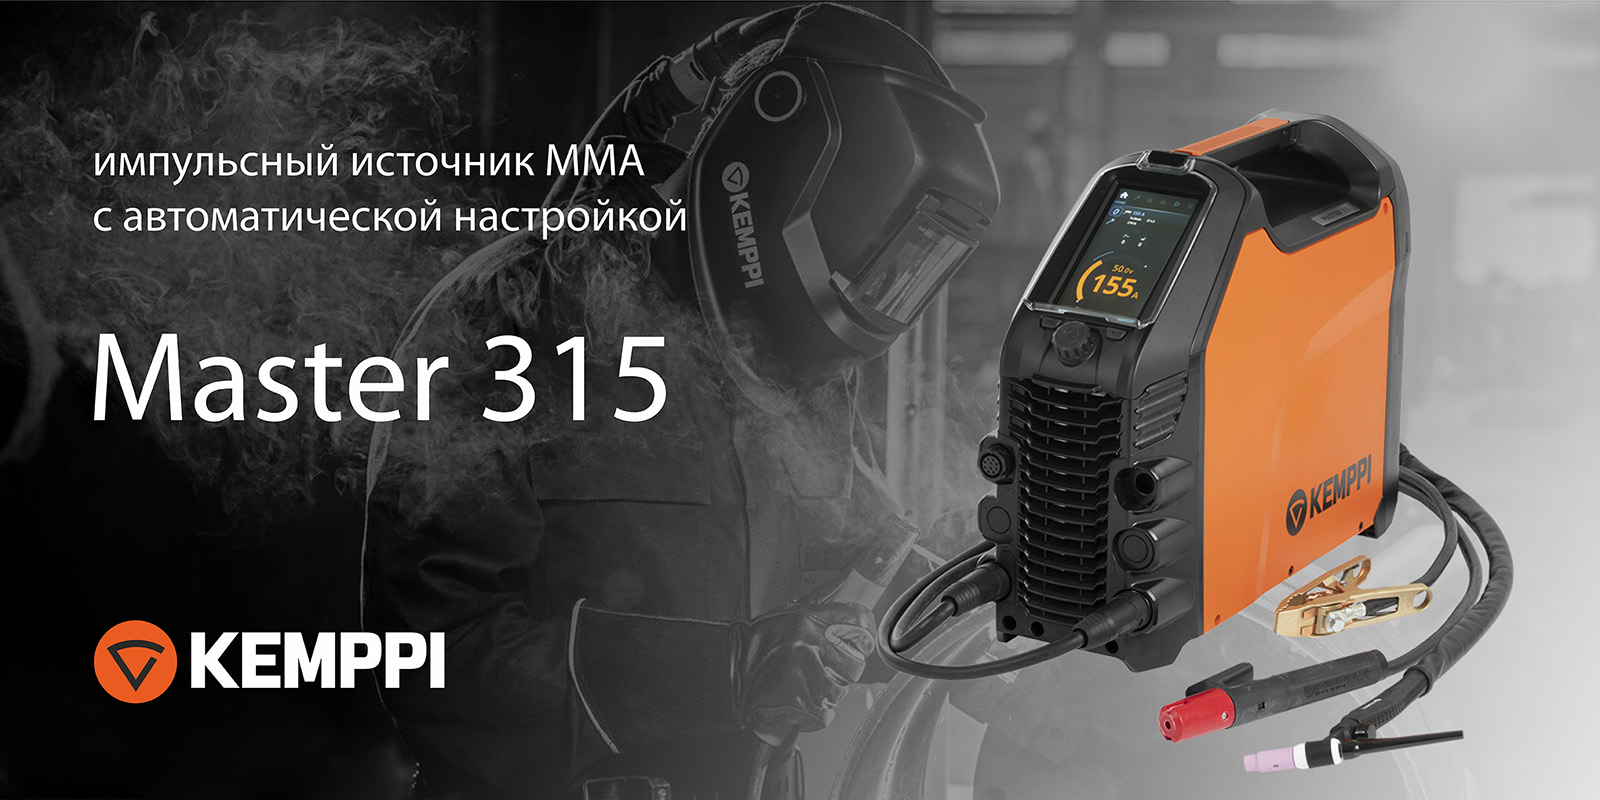 Новый источник MMA-сварки с импульсным режимом Kemppi Master 315